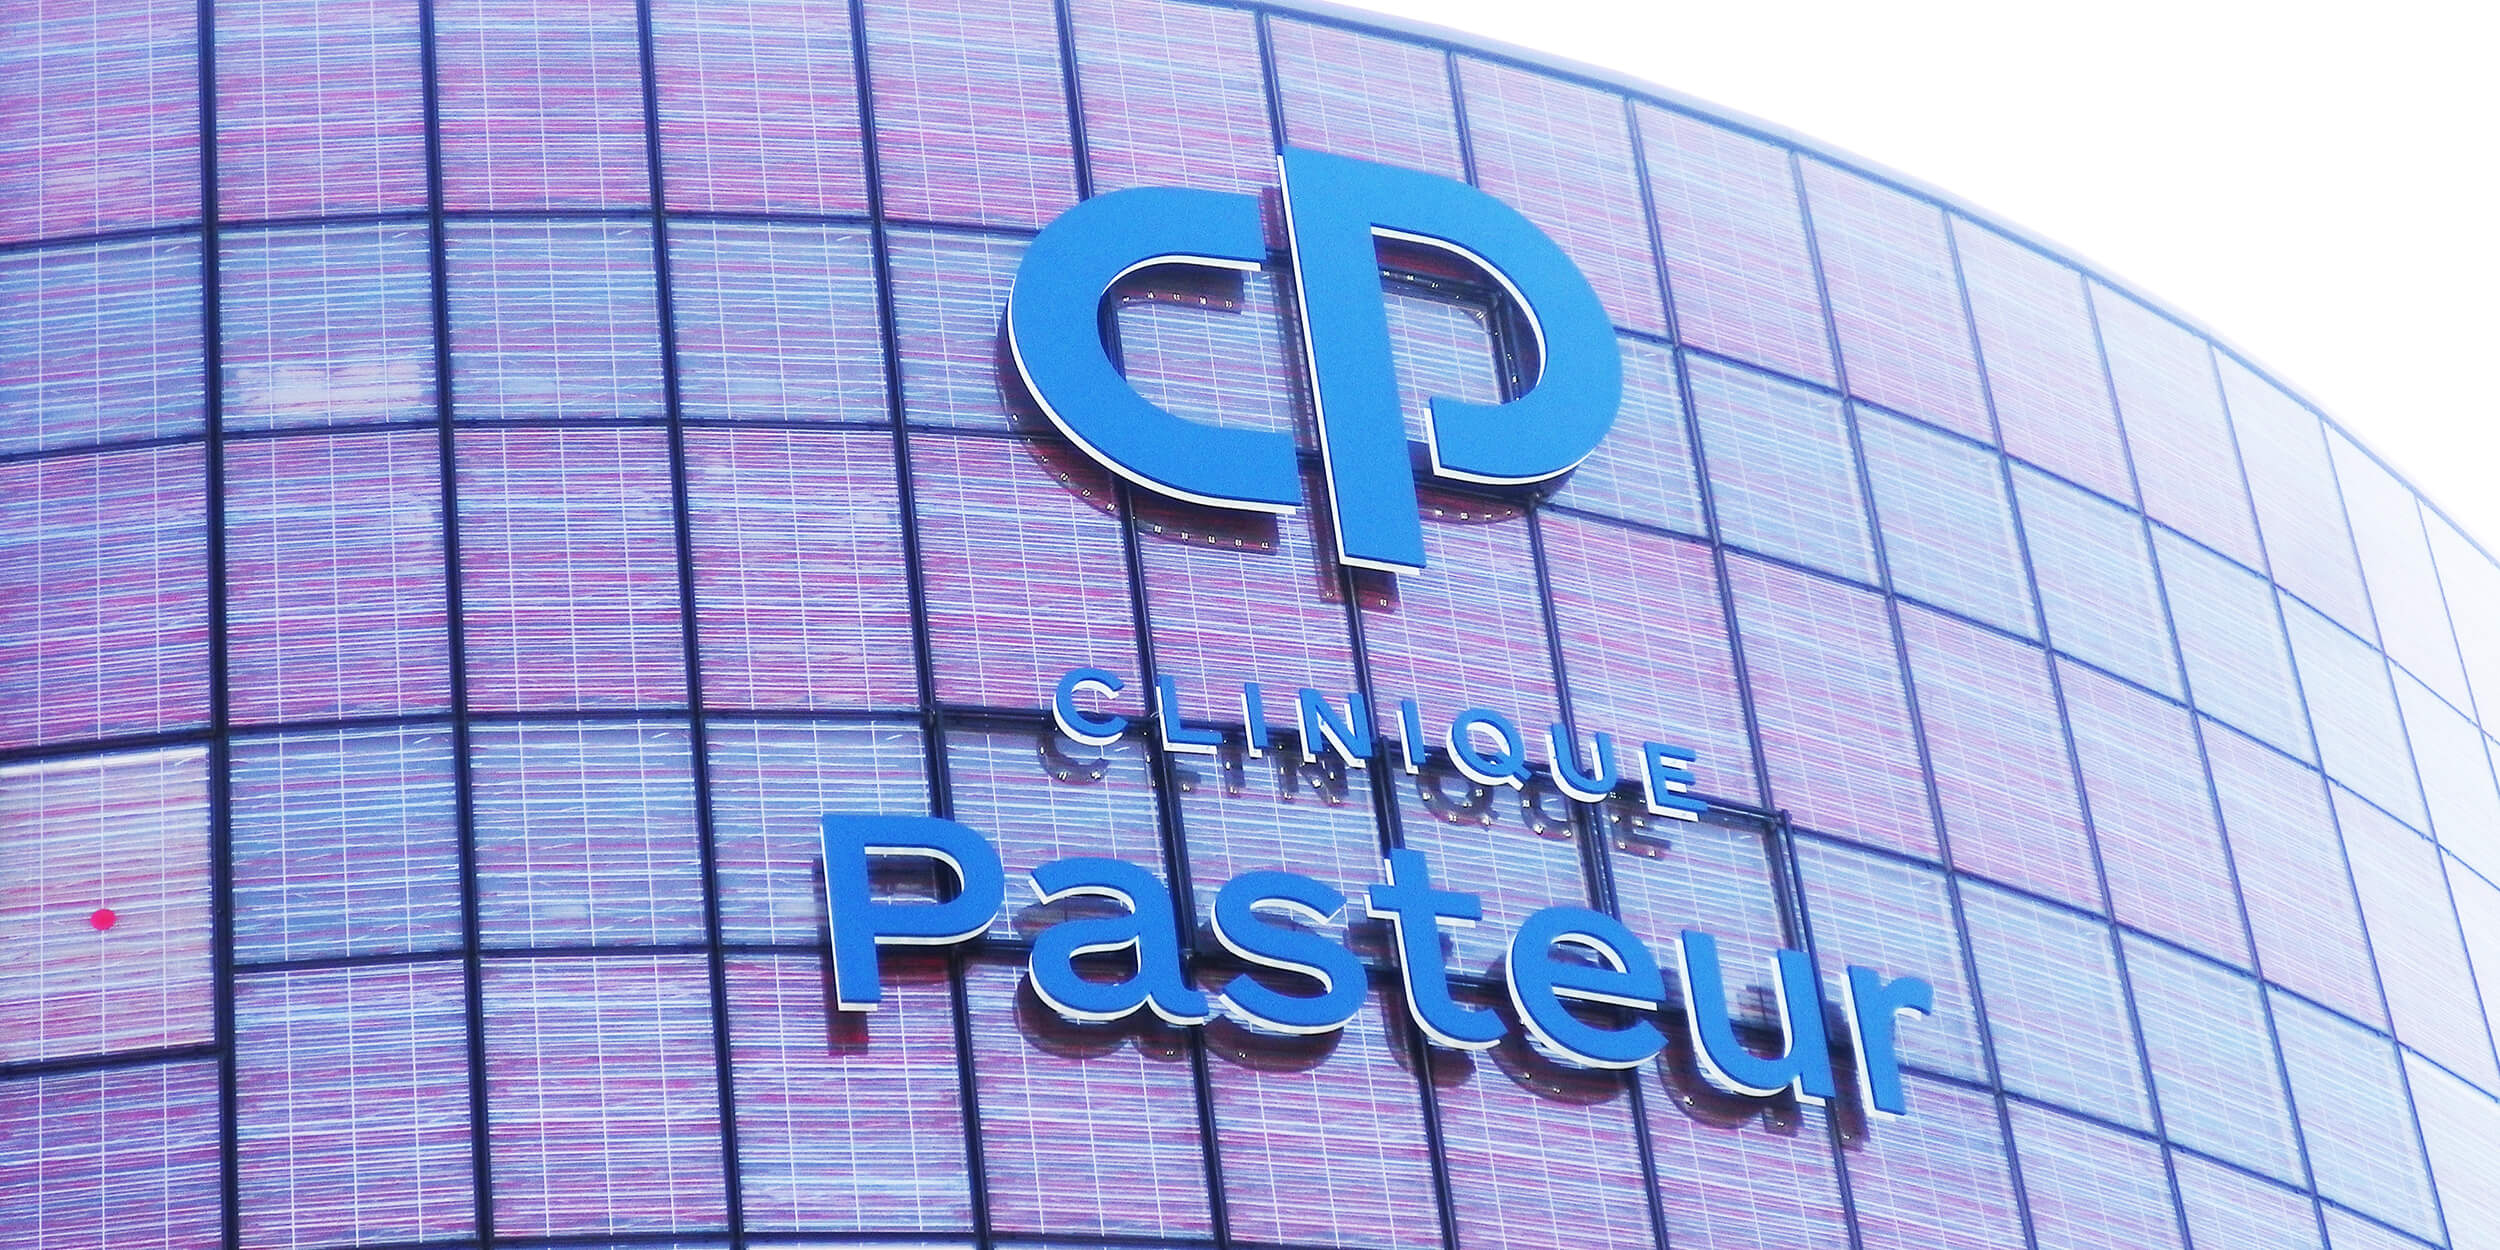 Lettres individuelles lumineuses de la Clinique Pasteur